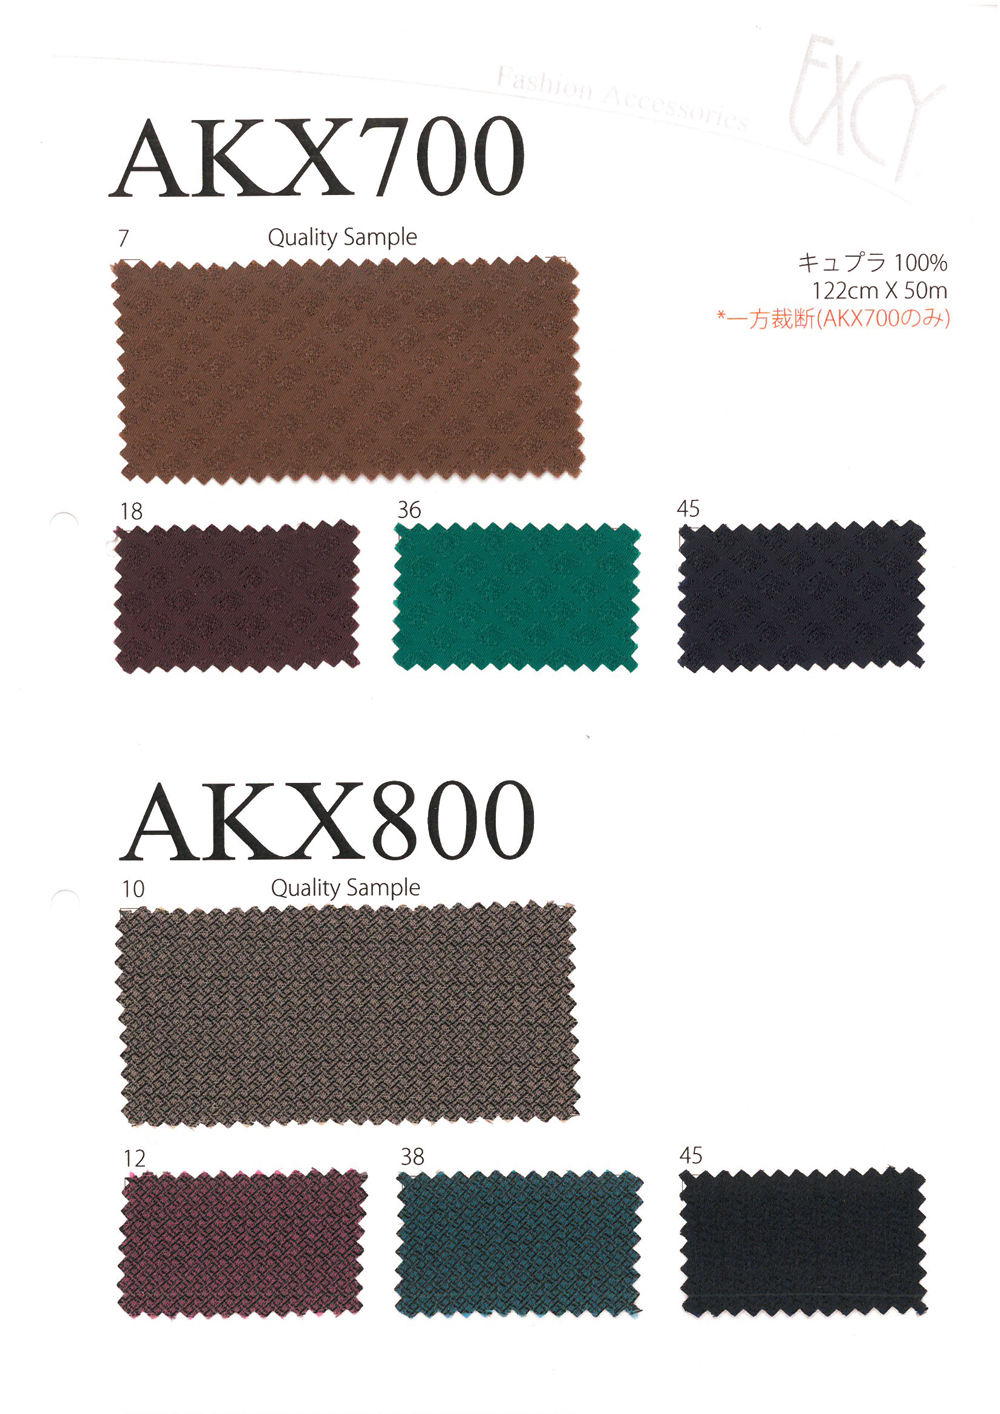 AKX800 幾何圖案奢華提花里料 旭化成